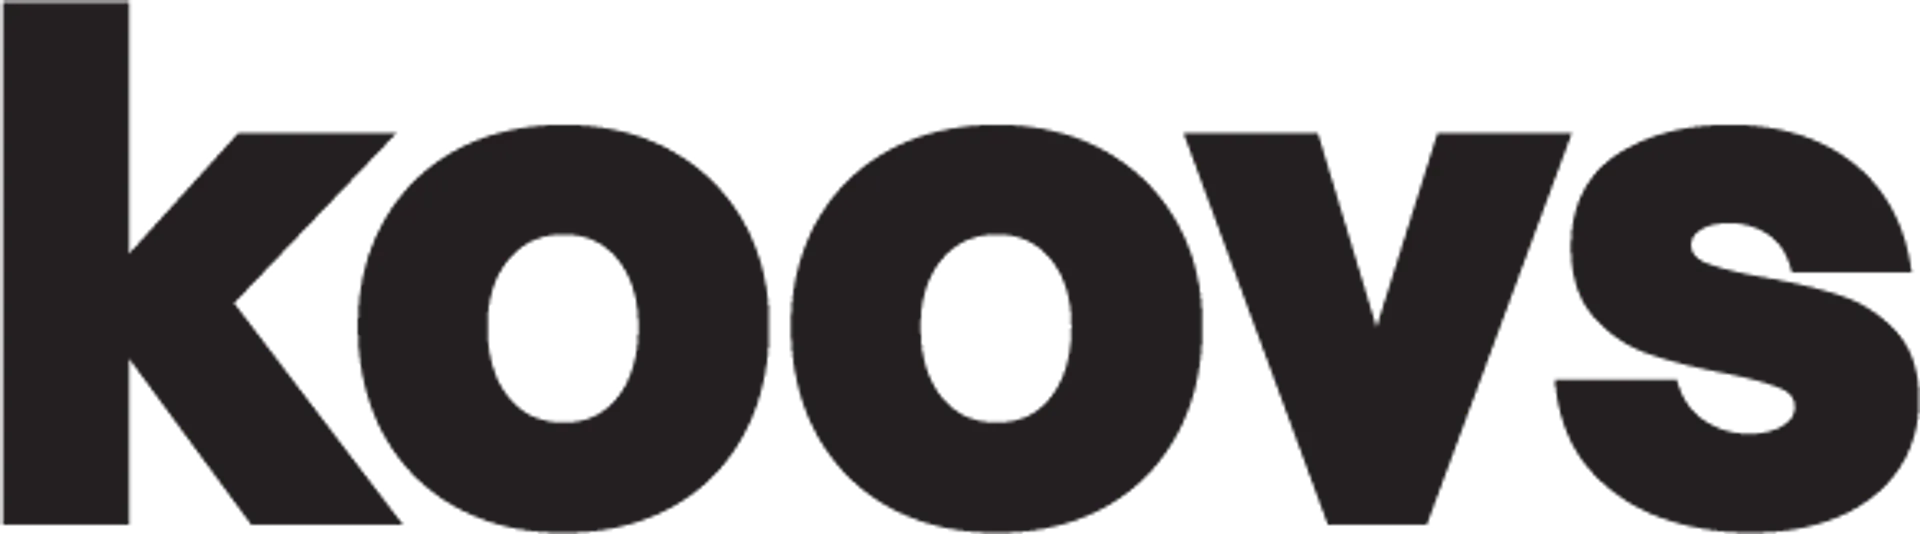 KOOVS logo. Current weekly ad